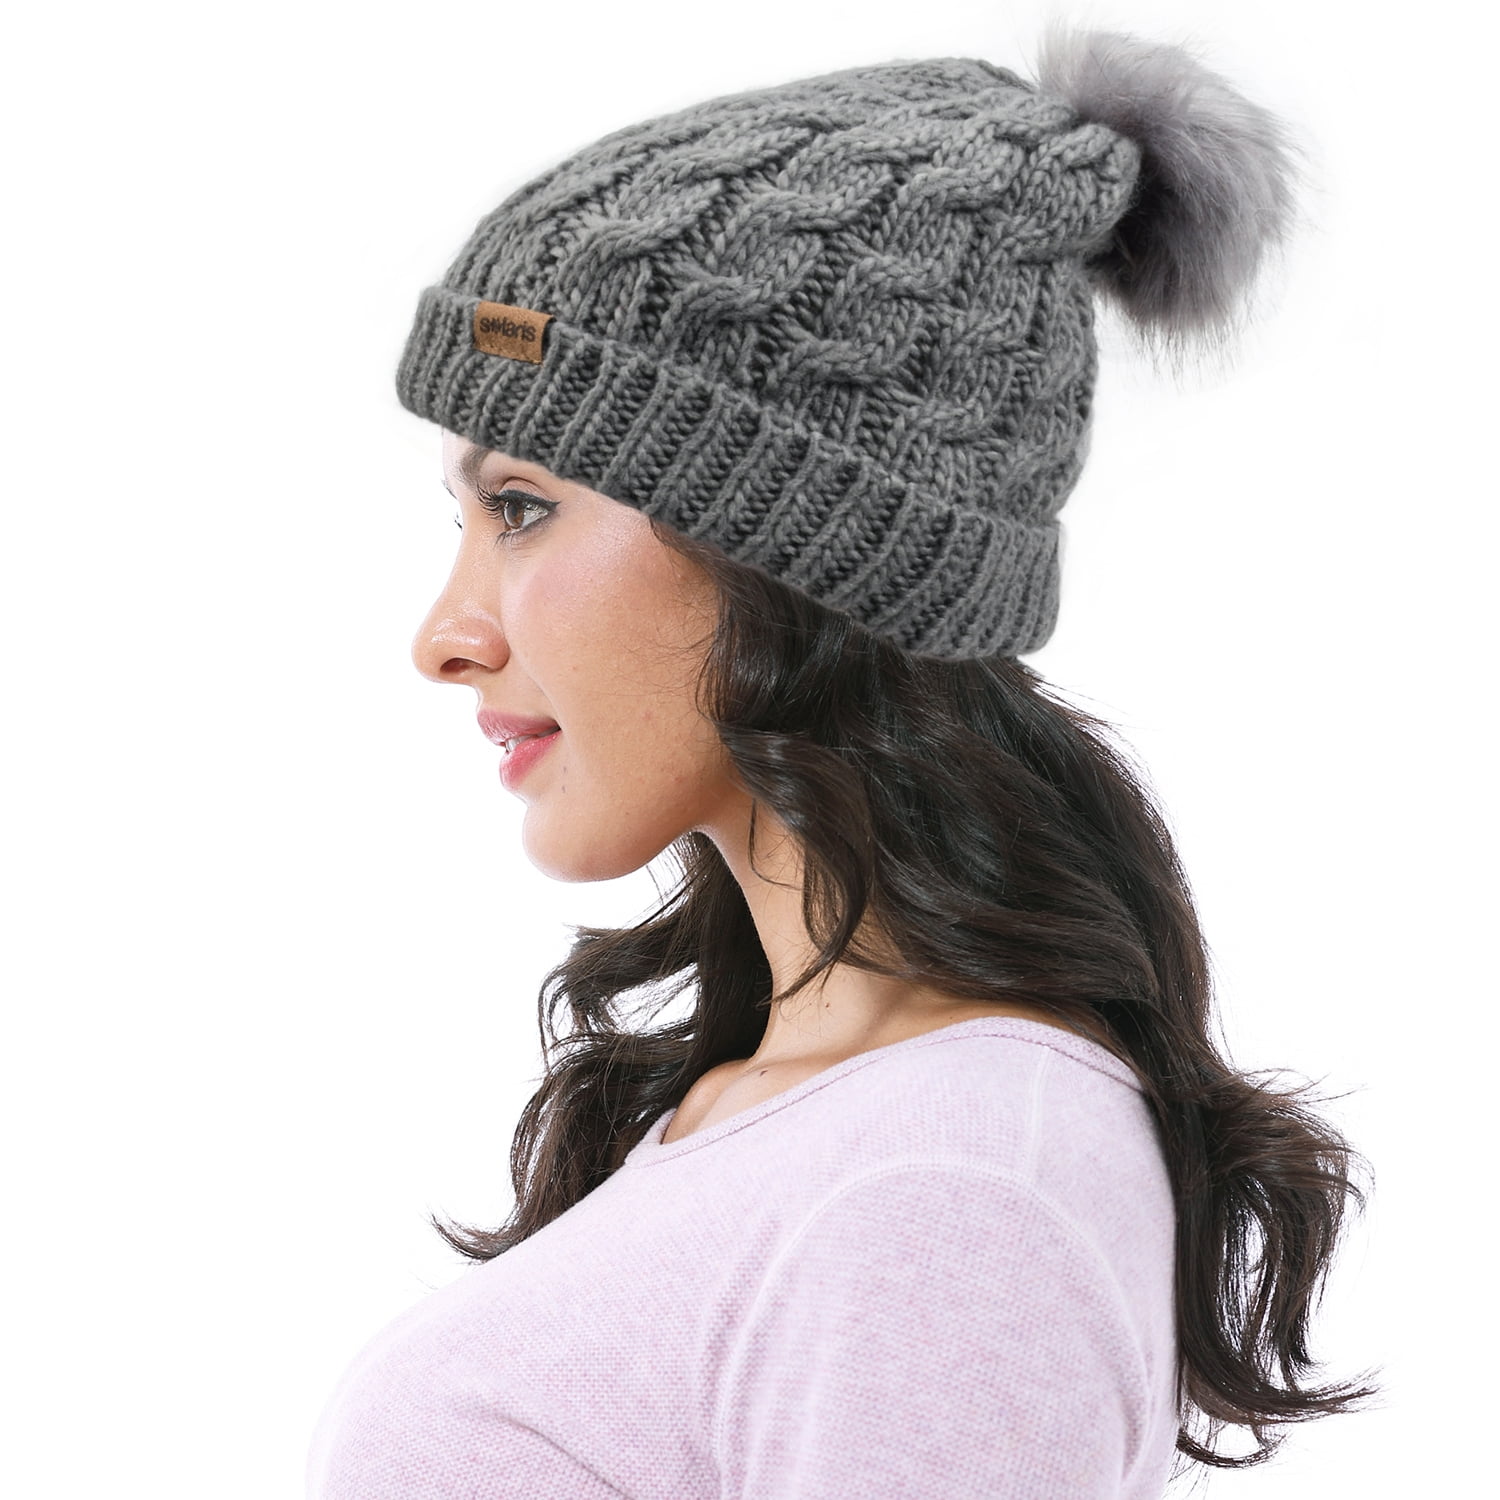 Womens Winter Beanie Hat Warm Casual Hat Skullies Skull Ski Cap with Pom Pom